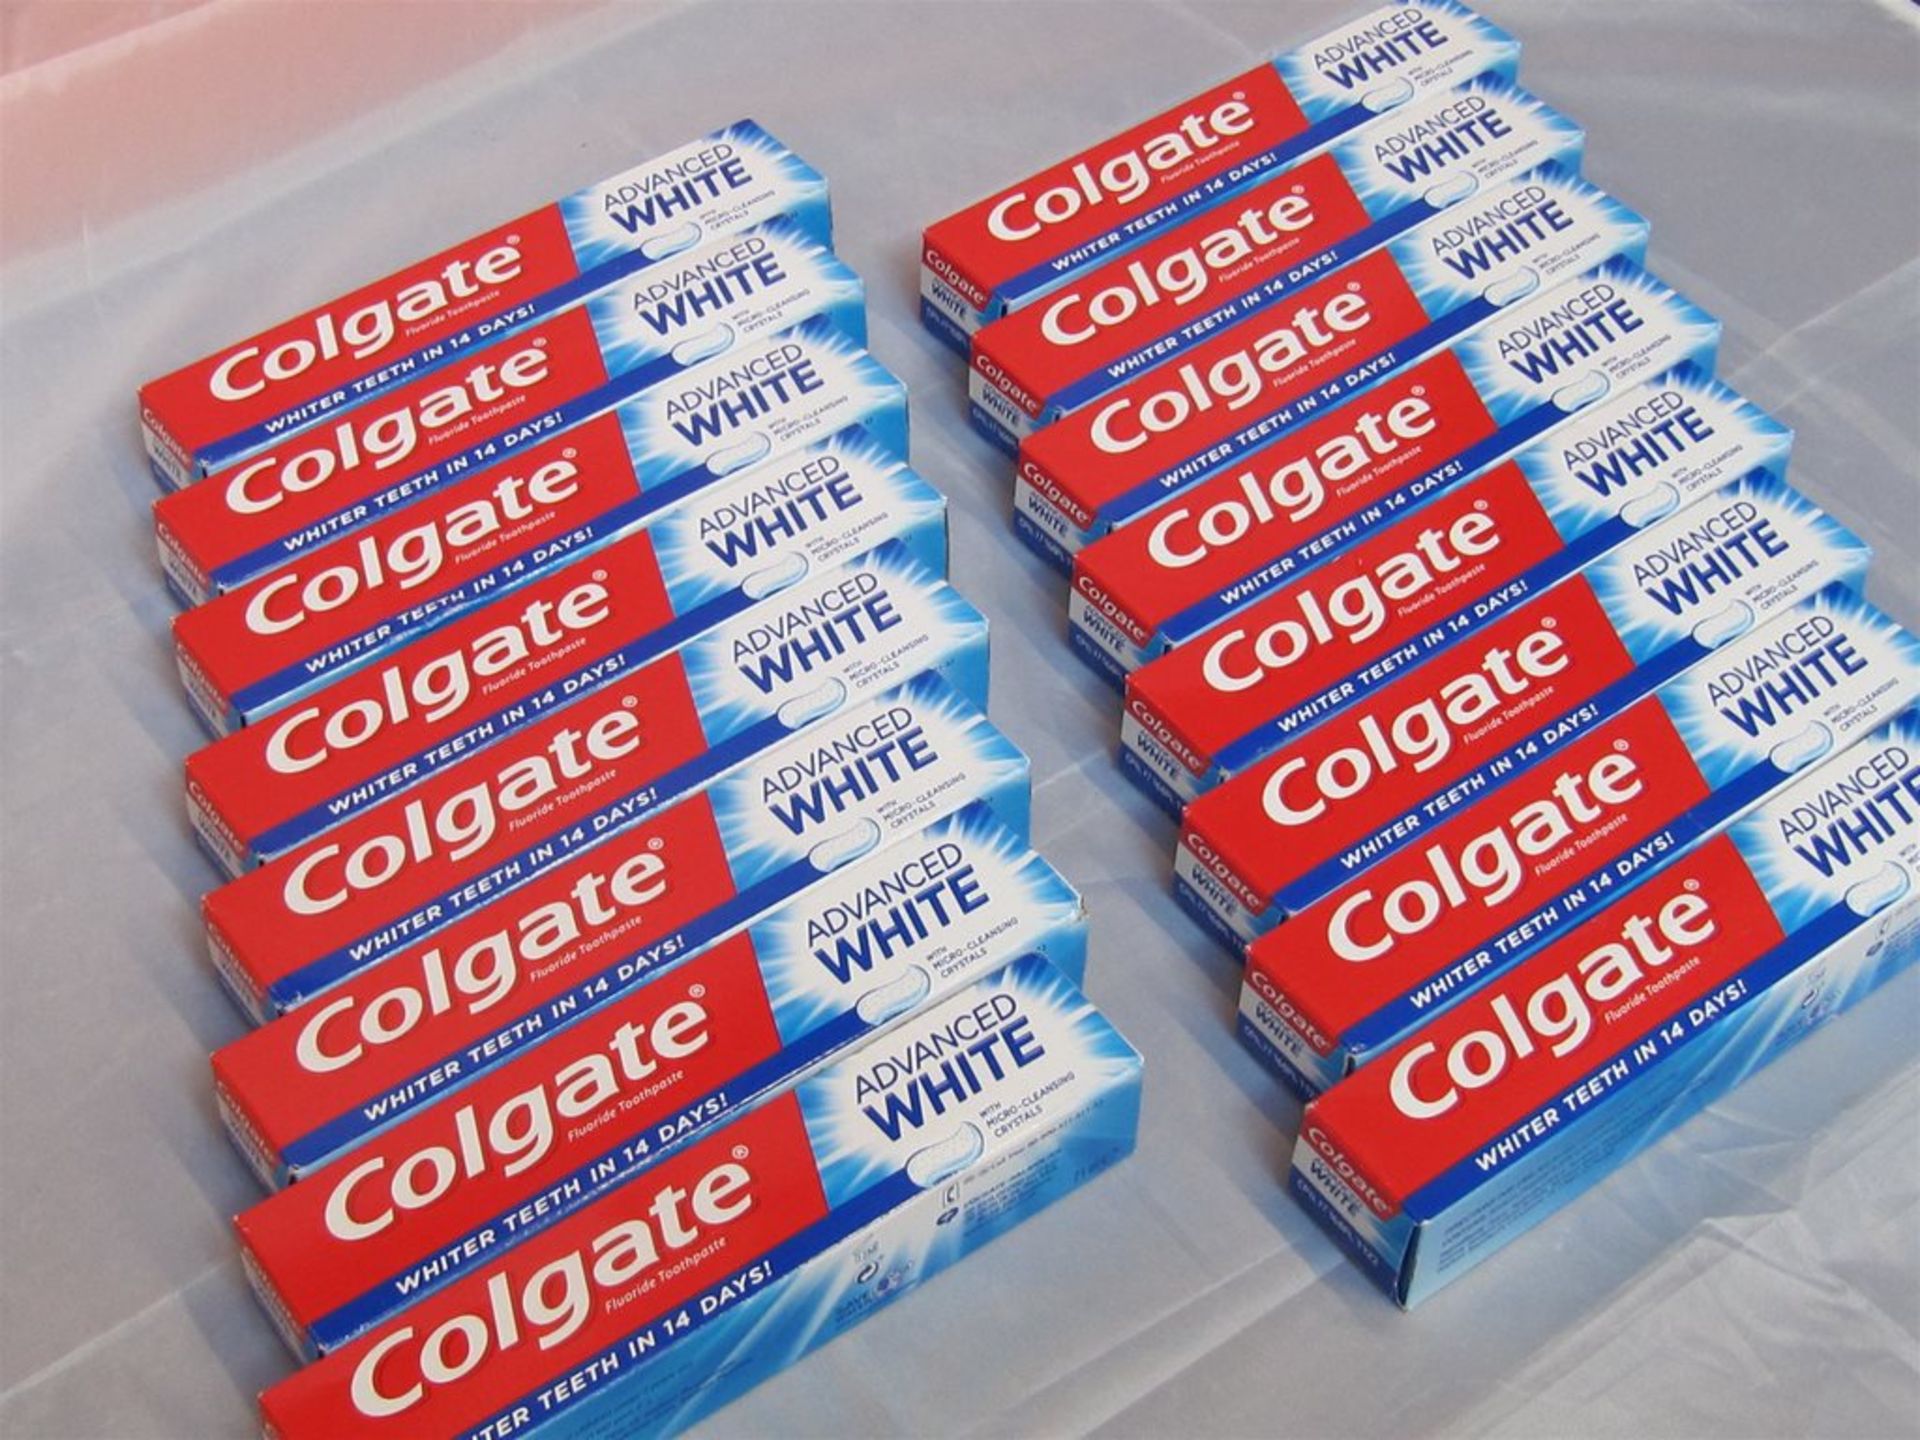 197) 16 x Colgate Fluoride Toothpaste. 75ml each. No vat on Hammer.